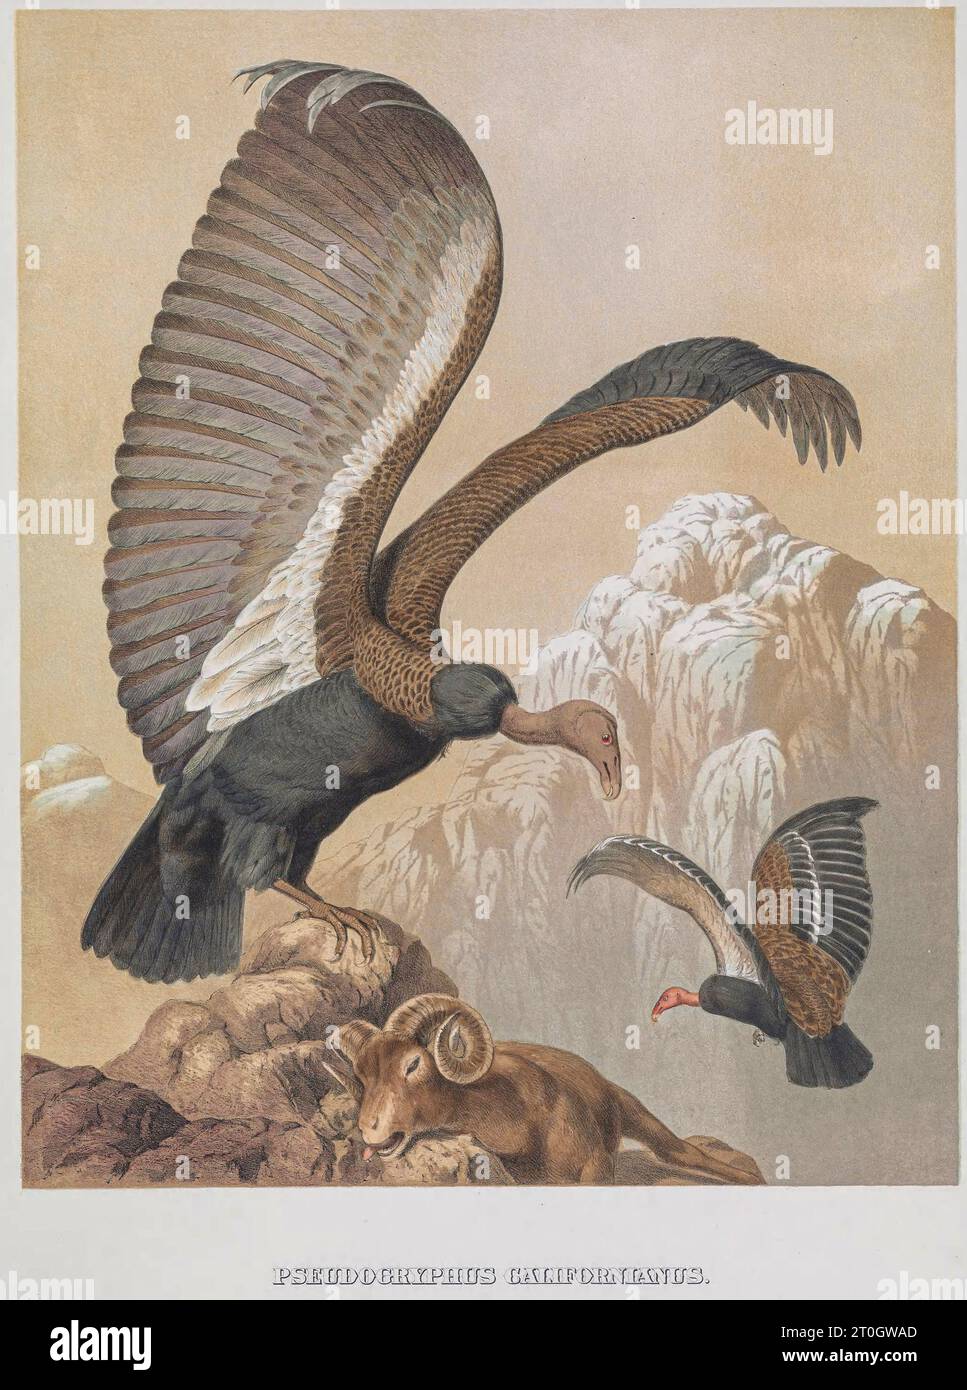 Californie Condor, illustration du XIXe siècle Banque D'Images